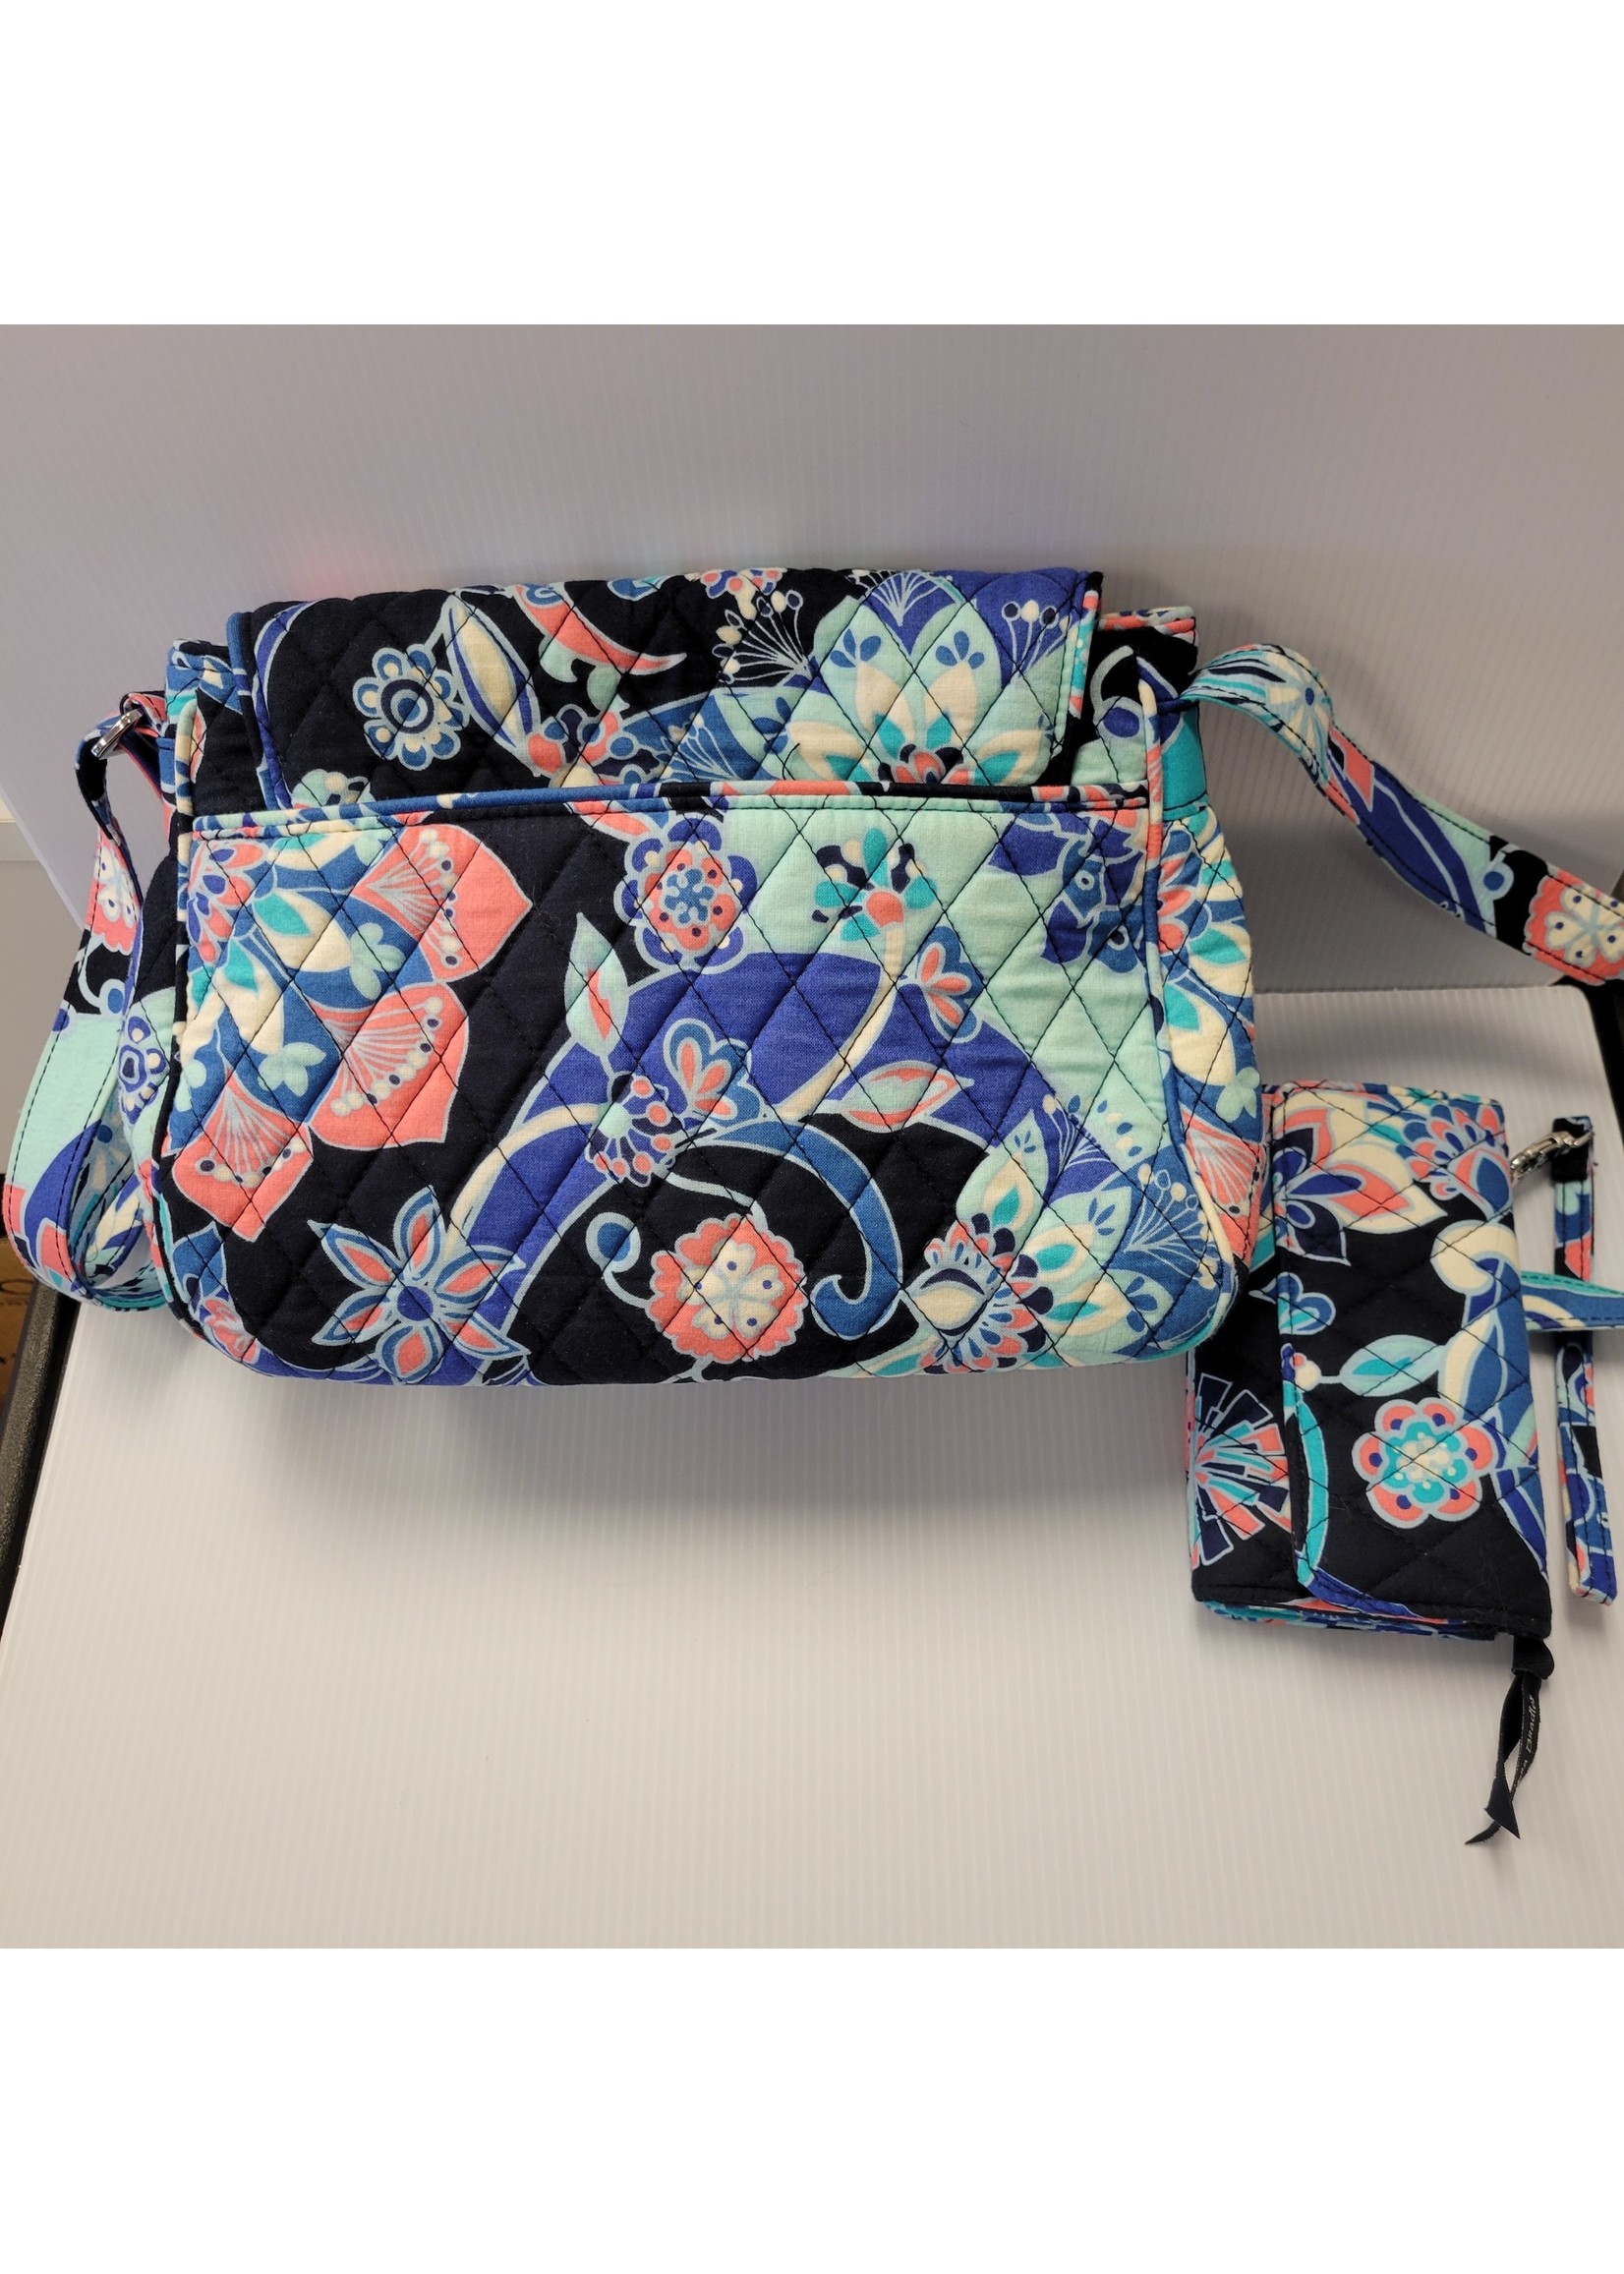 PIKADINGNIS Fancy Floral Tote Bag Purse for Women Girls Chic PU Leather  Lace Shoulder Bag Large Handbag - Walmart.com